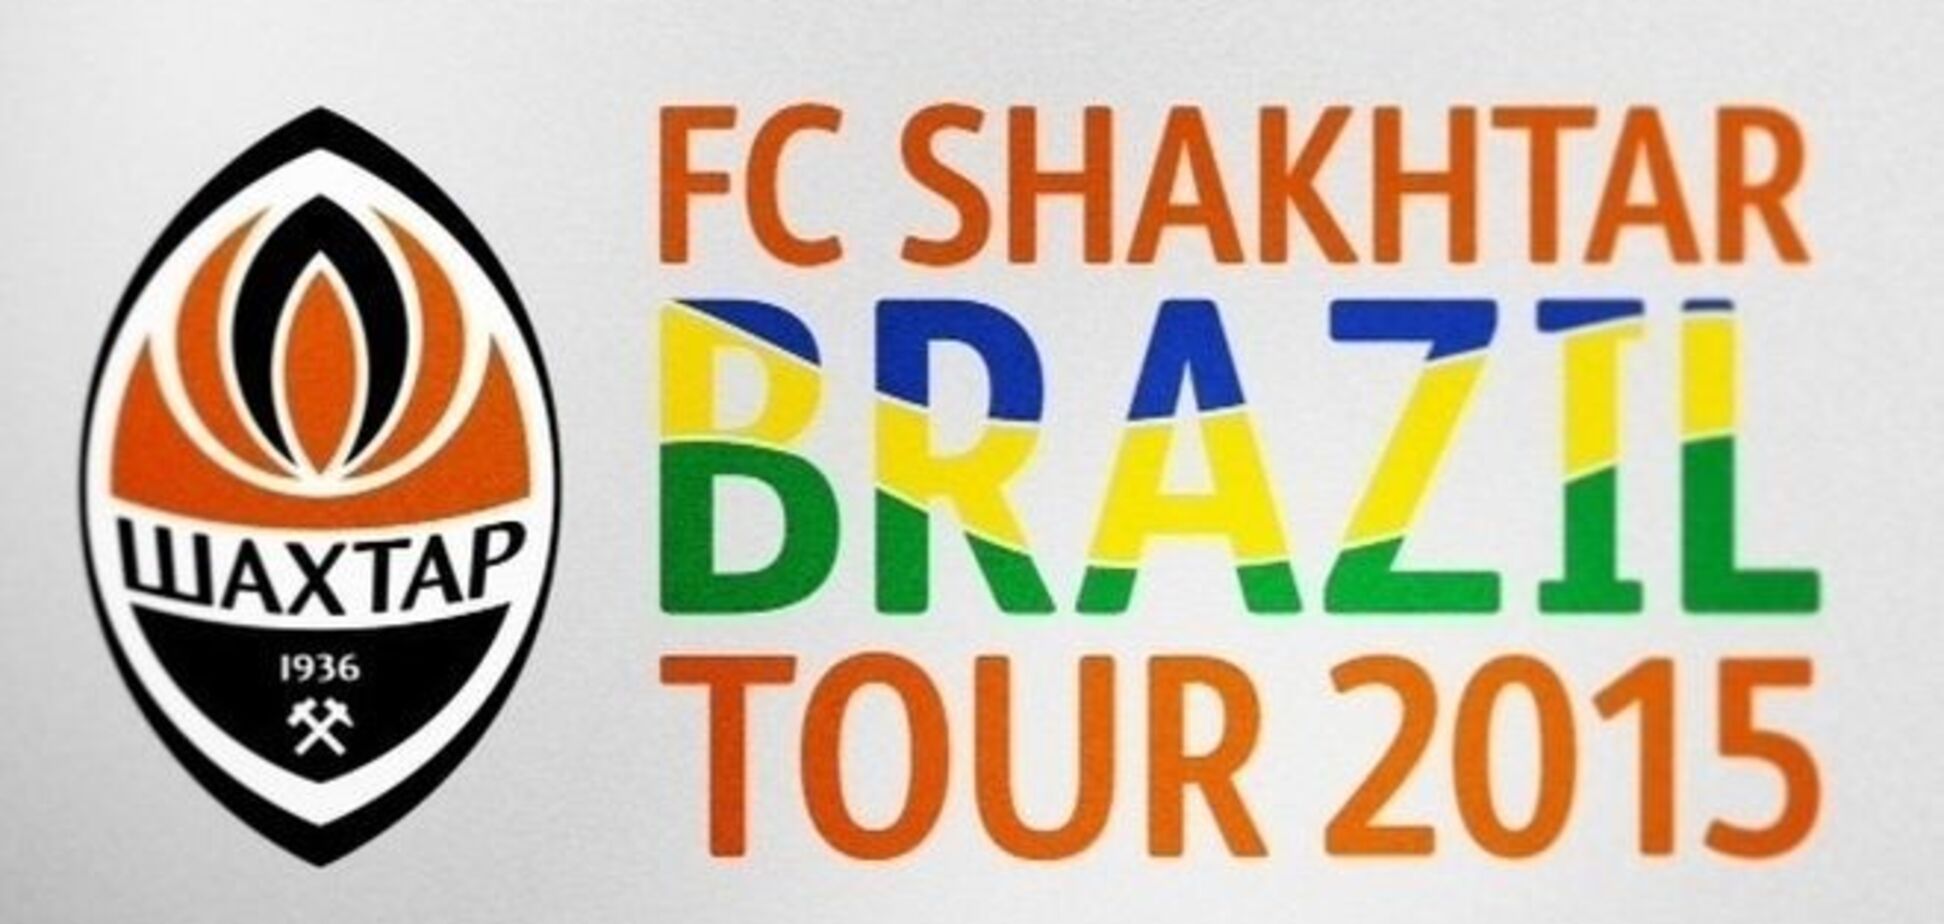 'Шахтер' утвердил расписание матчей в Бразилии